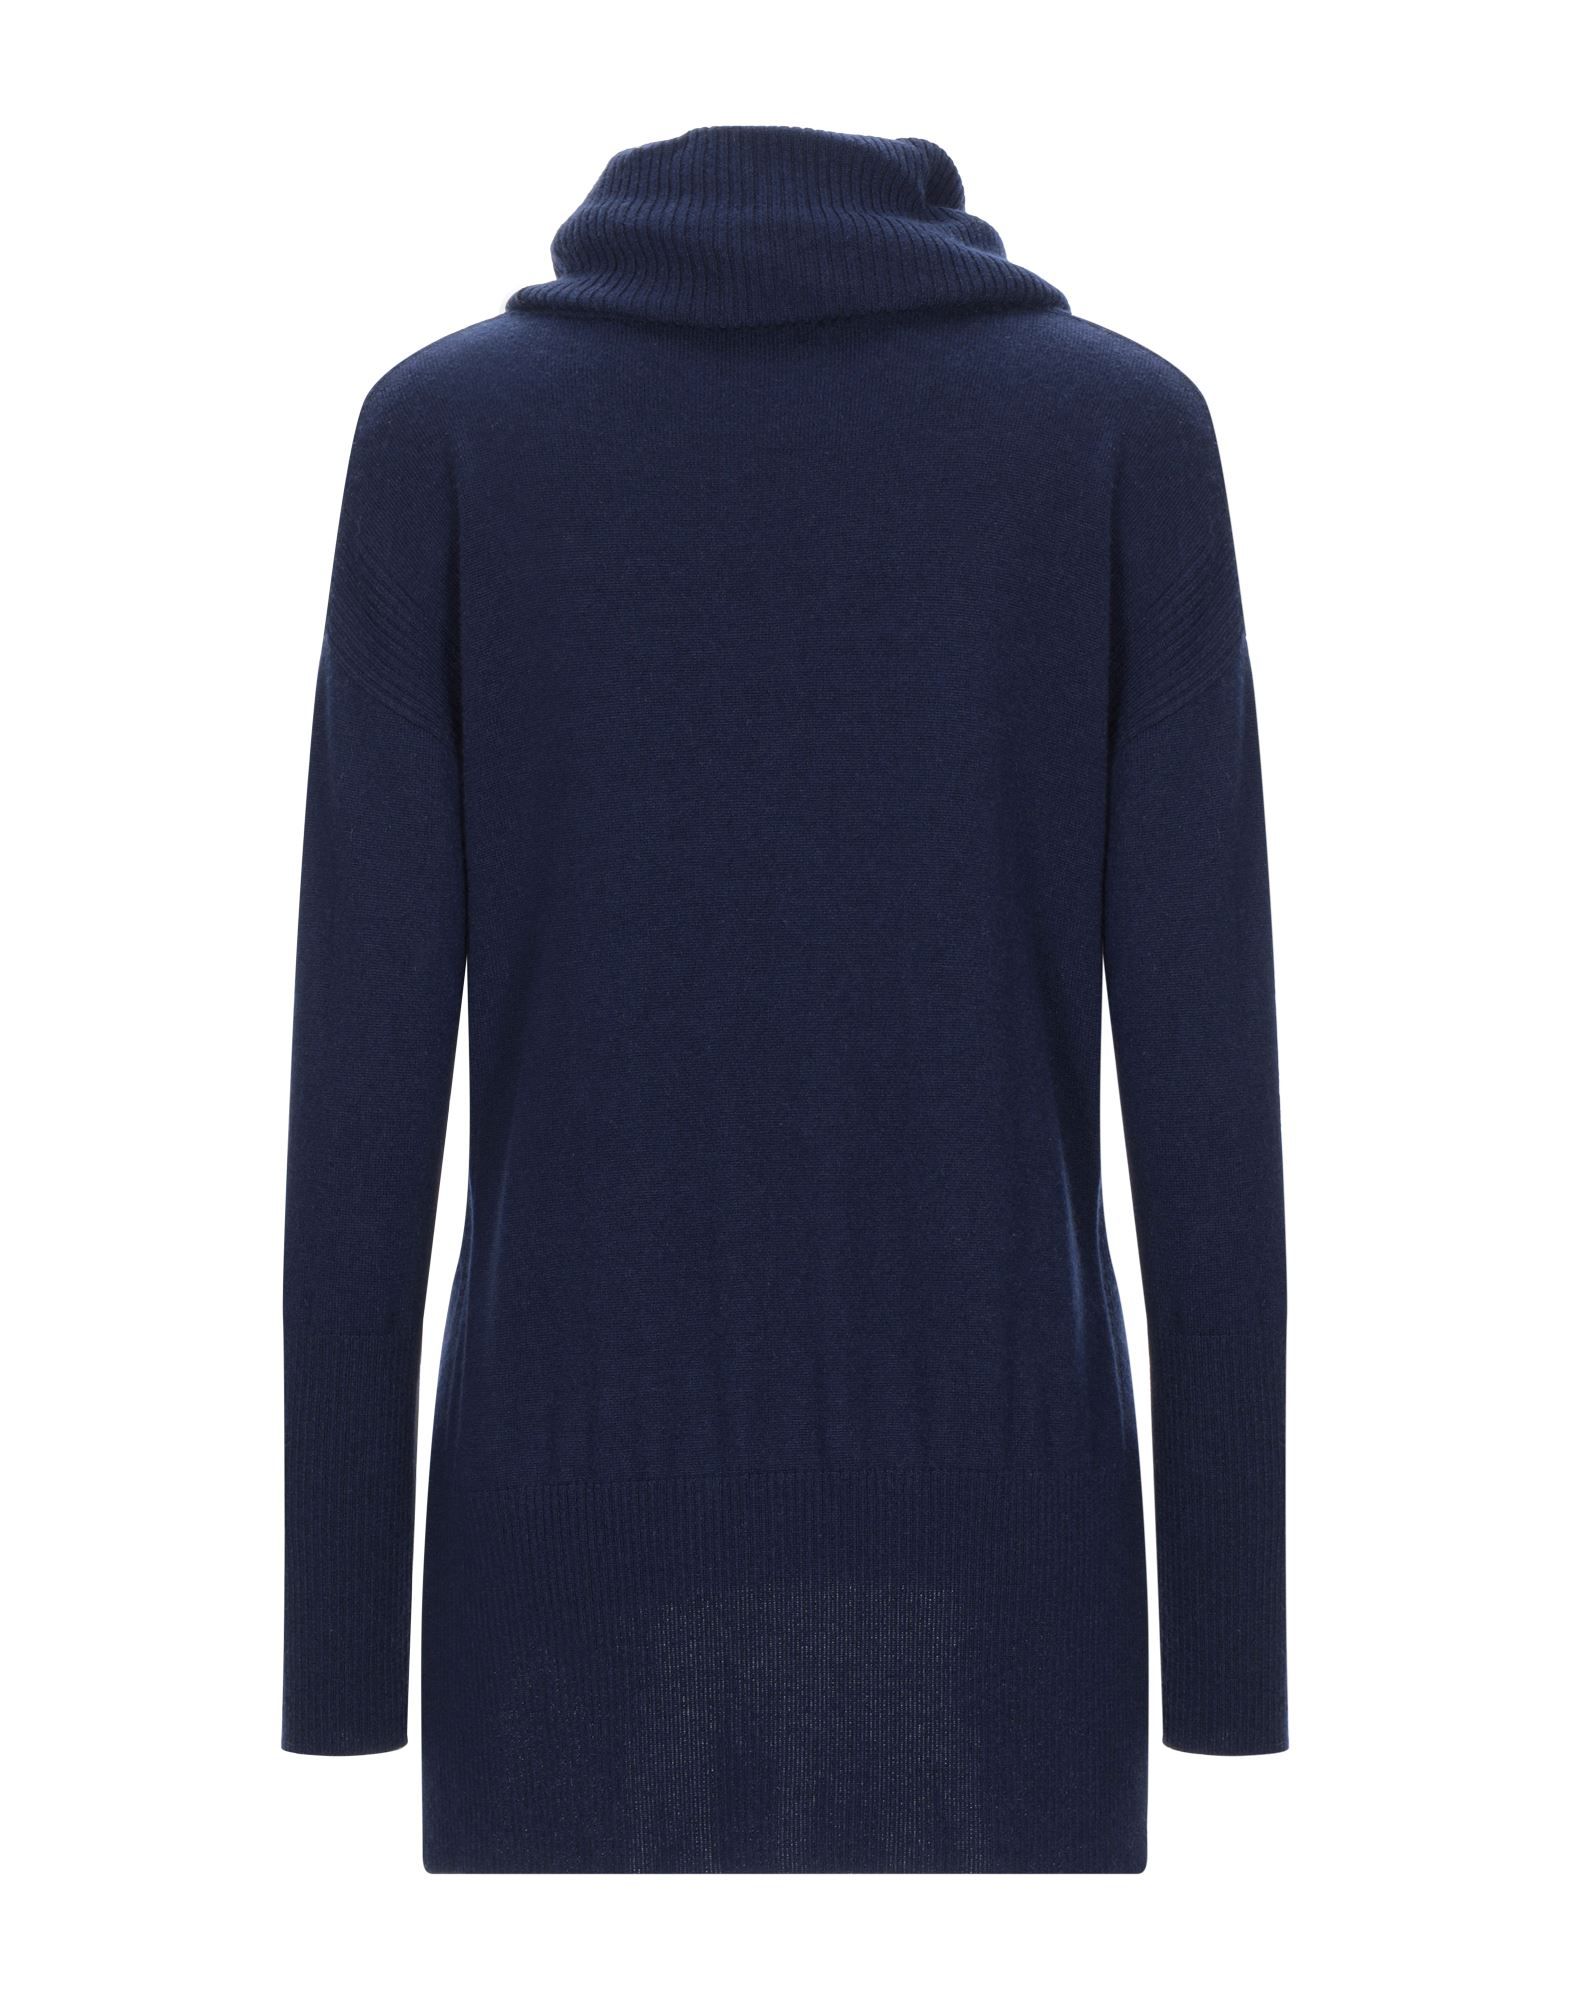 knitted, no appliqués, lightweight knit, turtleneck, basic solid colour, long sleeves, no pockets, side slit hemline